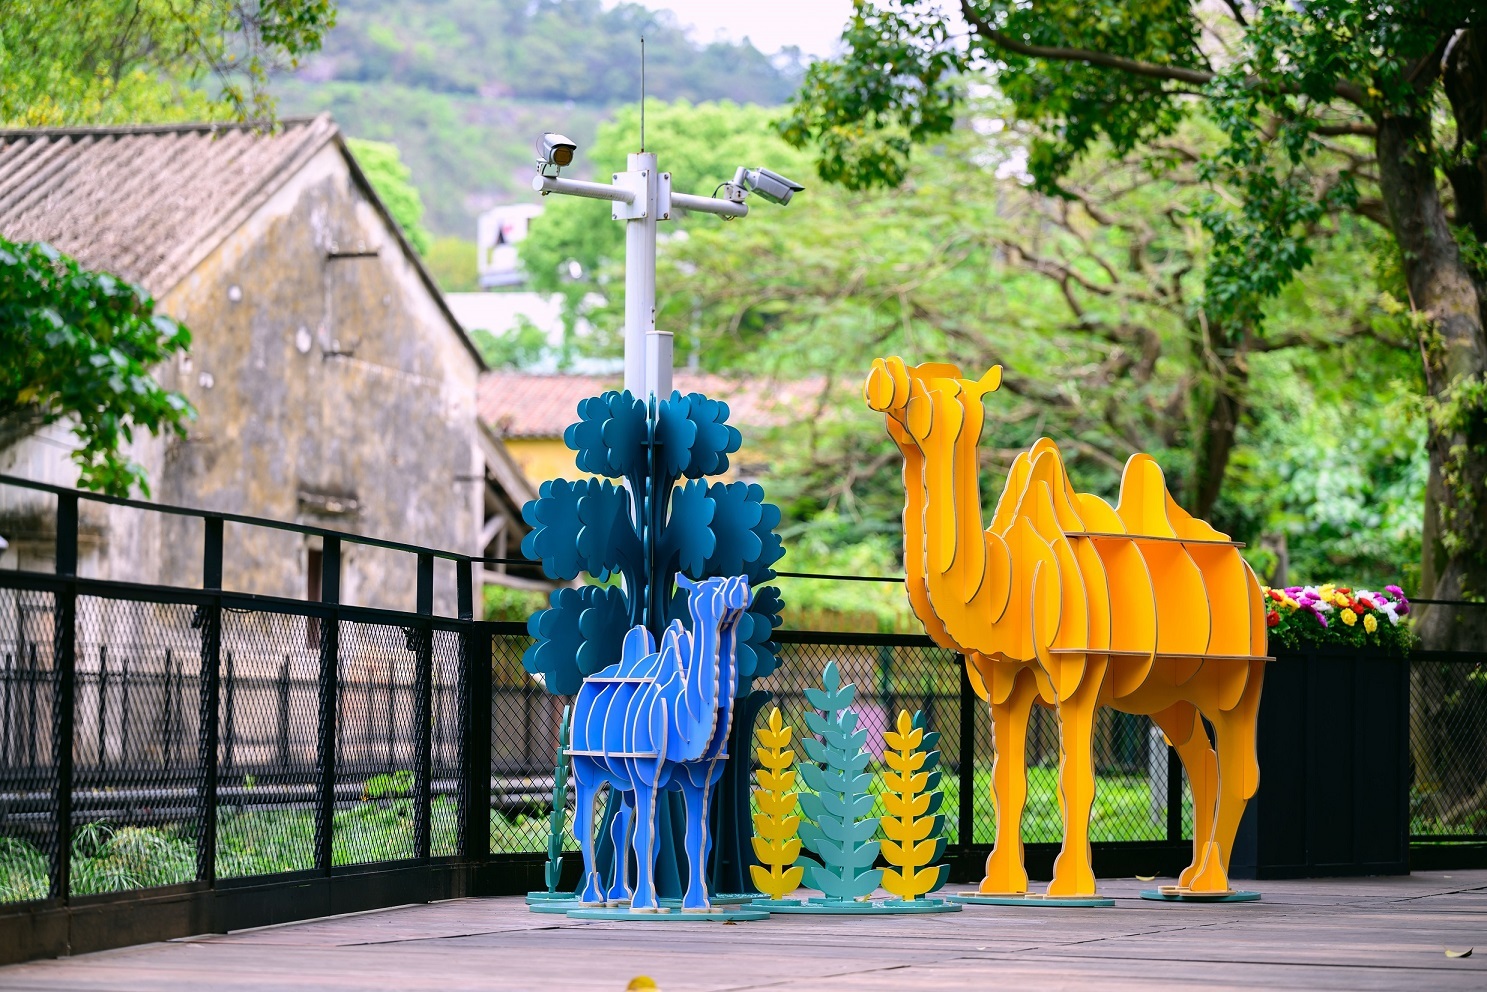 マカオIR運営サンズがタイパ島の観光名所に動物園とロマンステーマのインスタレーション作品設置